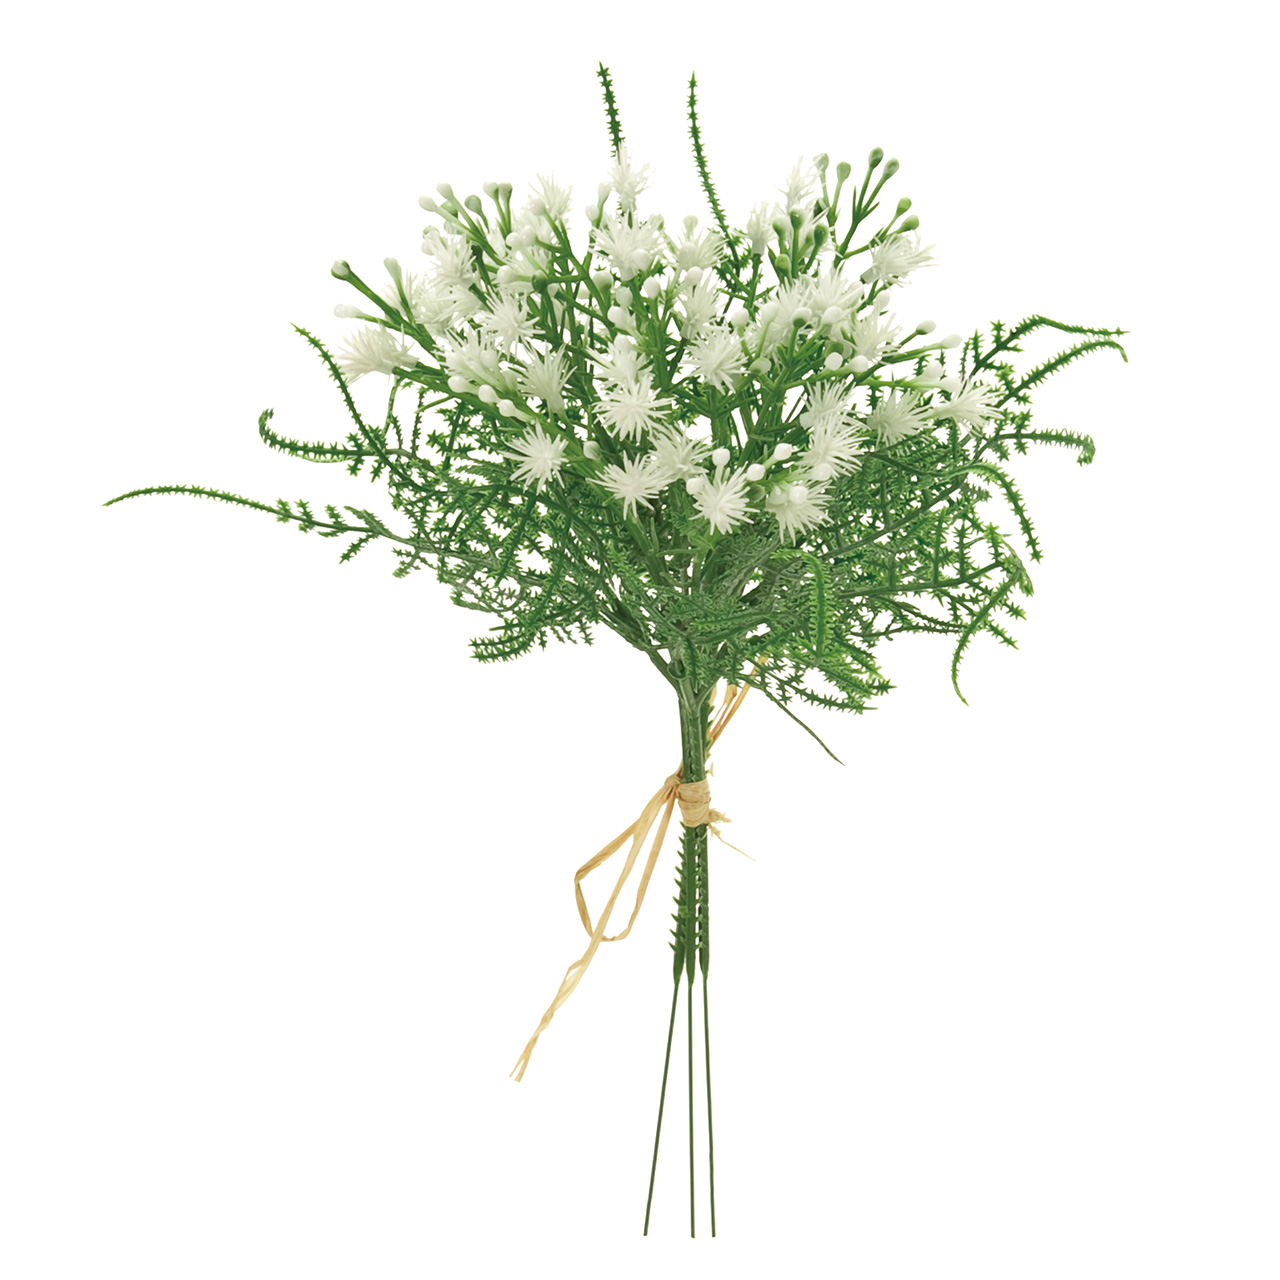 マイフラ 通販 Magiq ポンポンフラワー ピック ホワイト アーティフィシャルフラワー 造花 Fm 001 1束 小花 ホワイト Magiq アーティフィシャルフラワー 造花 全国にmagiq 花器 花資材などをお届けします